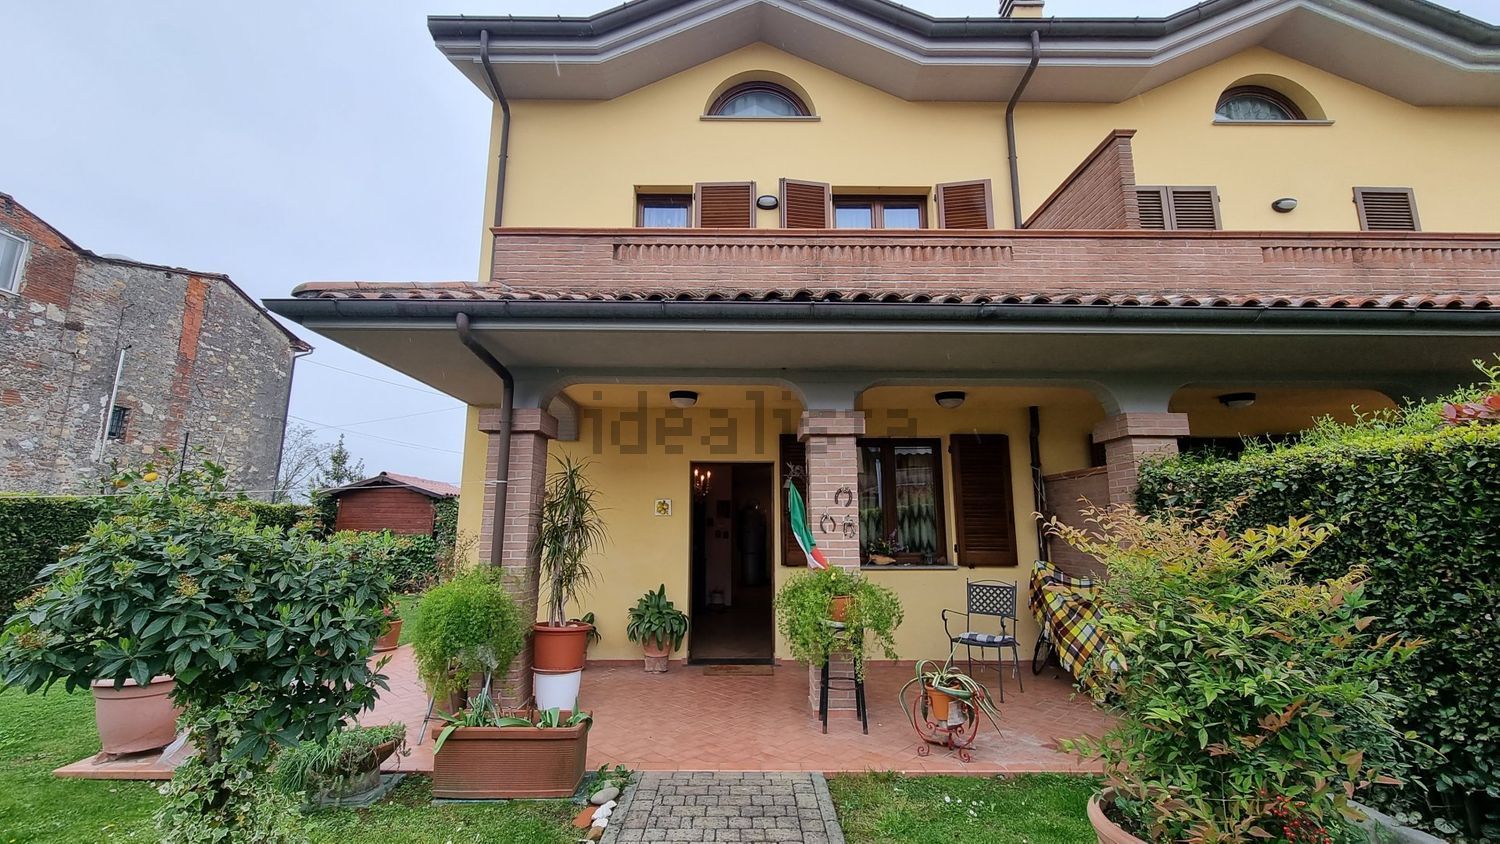 Bella Villa bifamiliare San CASSIANO , LIV5080 € 365000